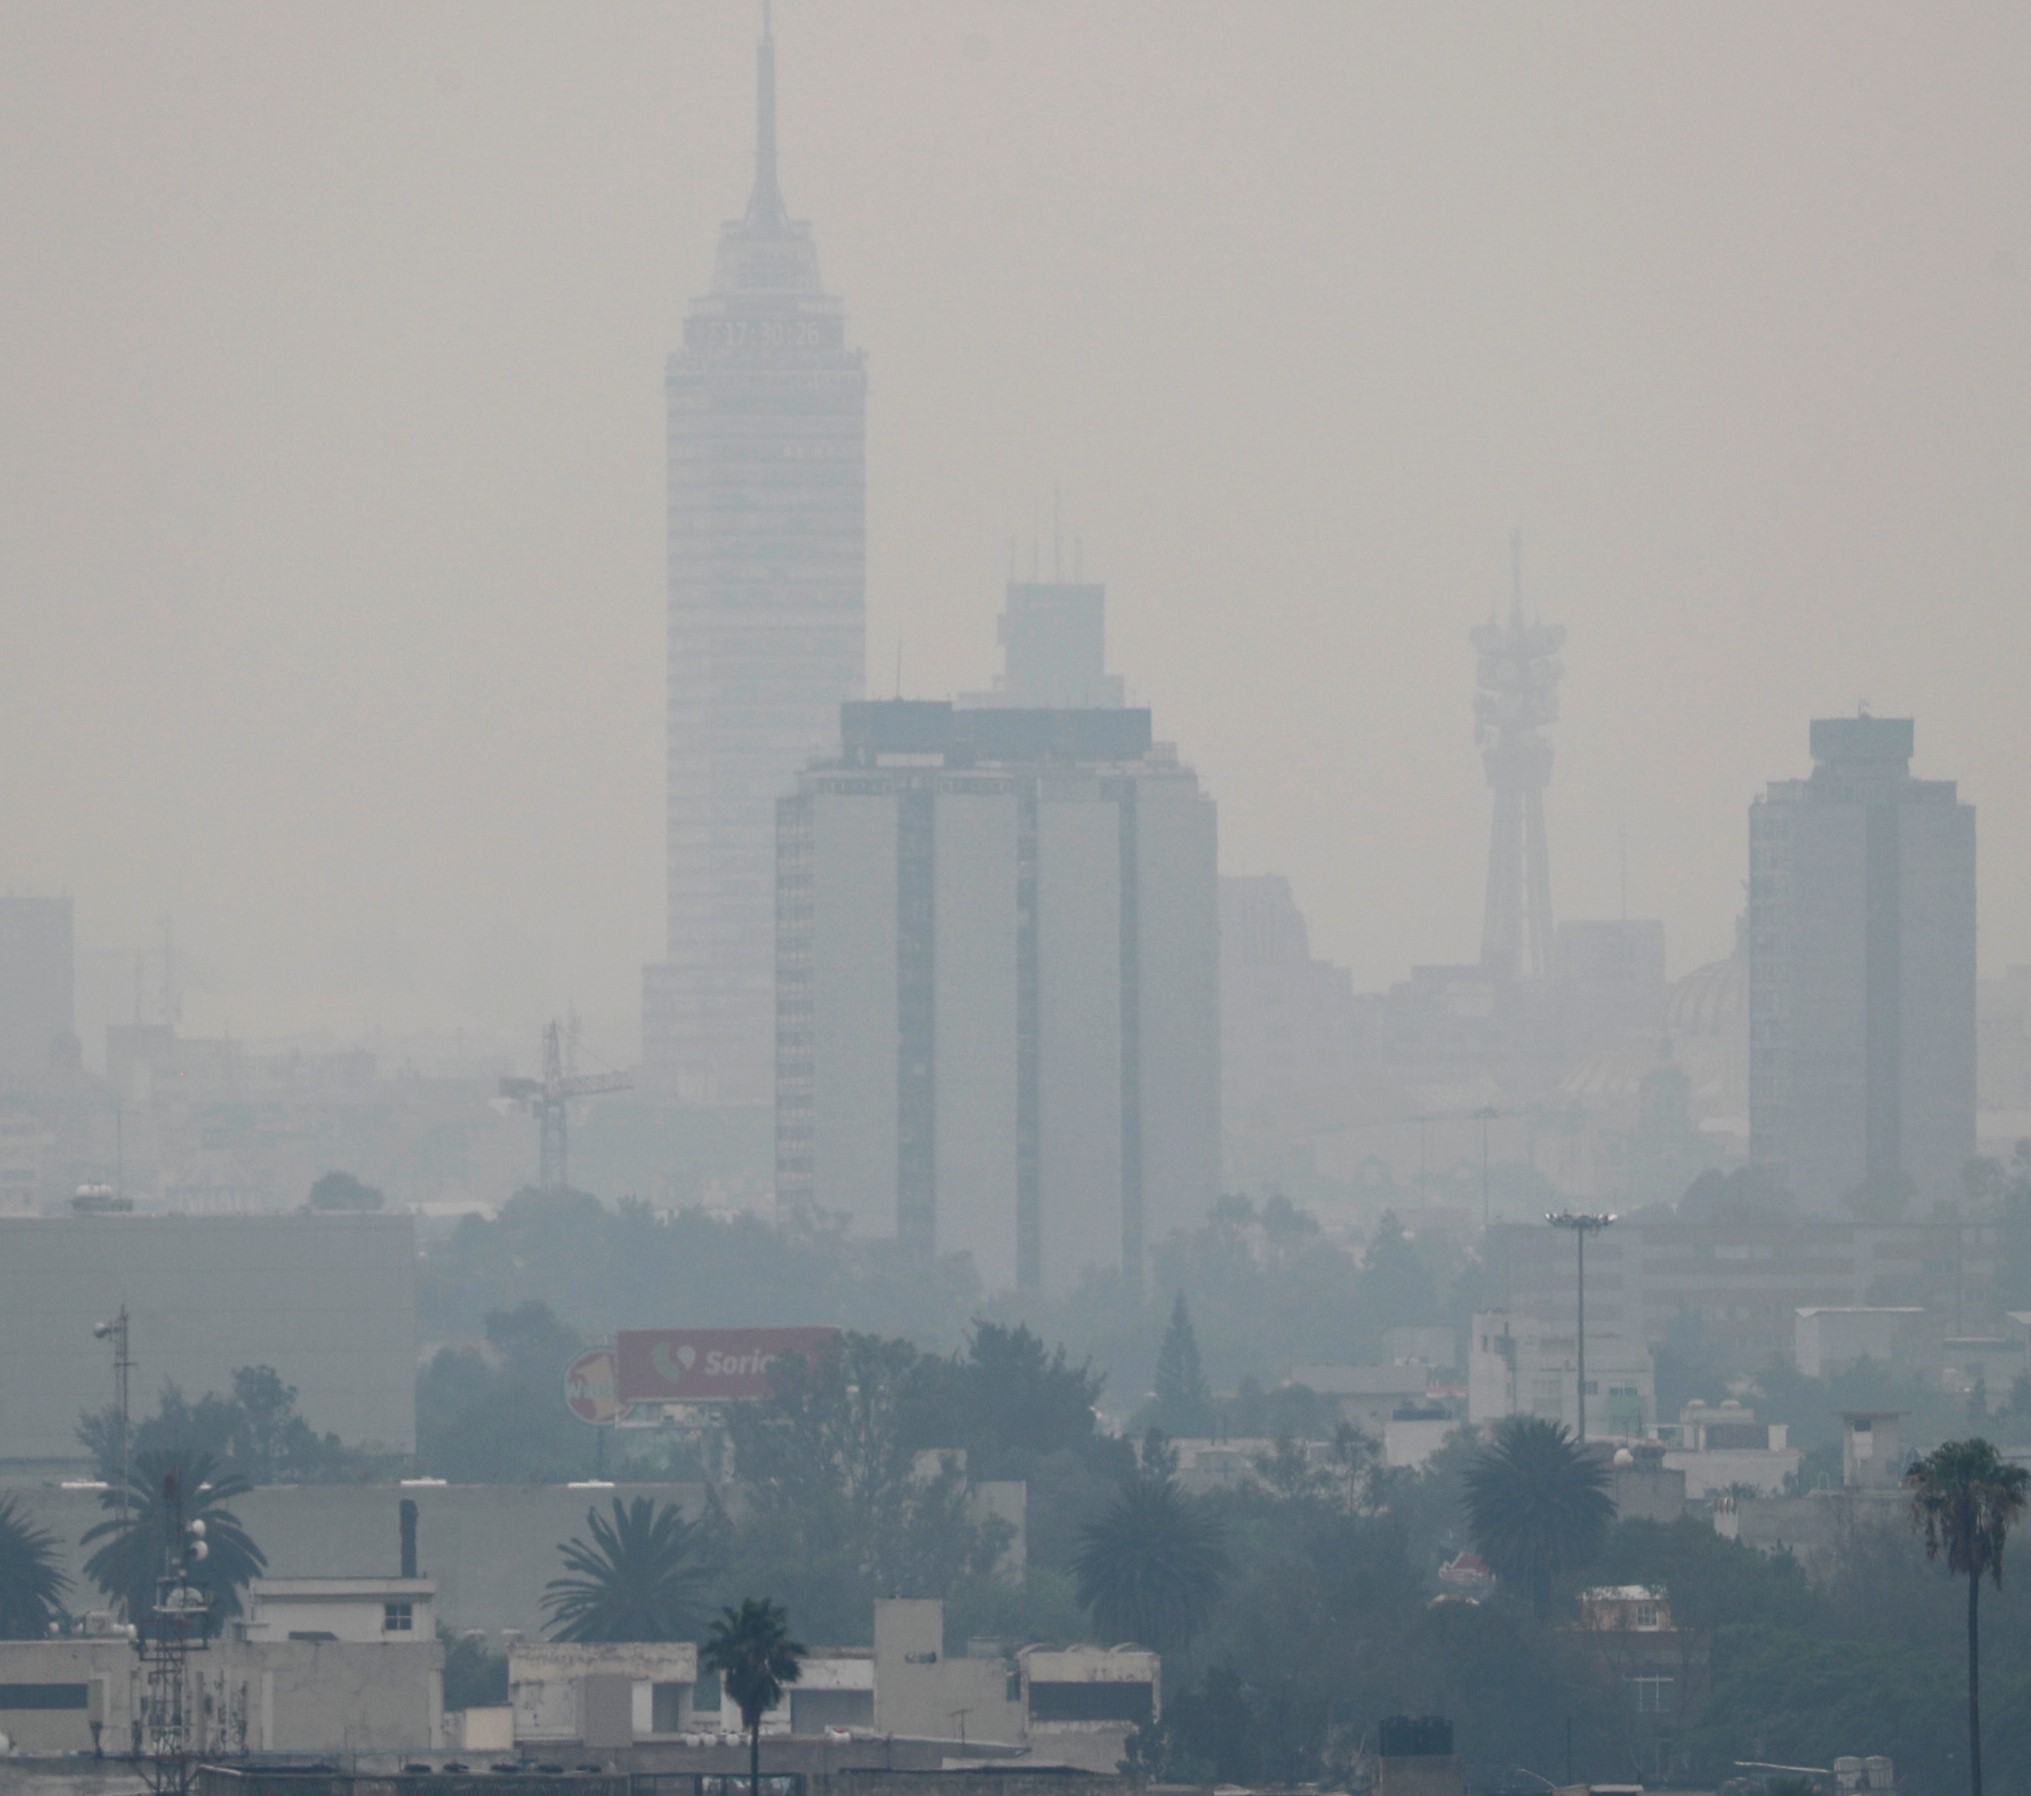 5月12日,在墨西哥城,烟霾笼罩城市.|新华社